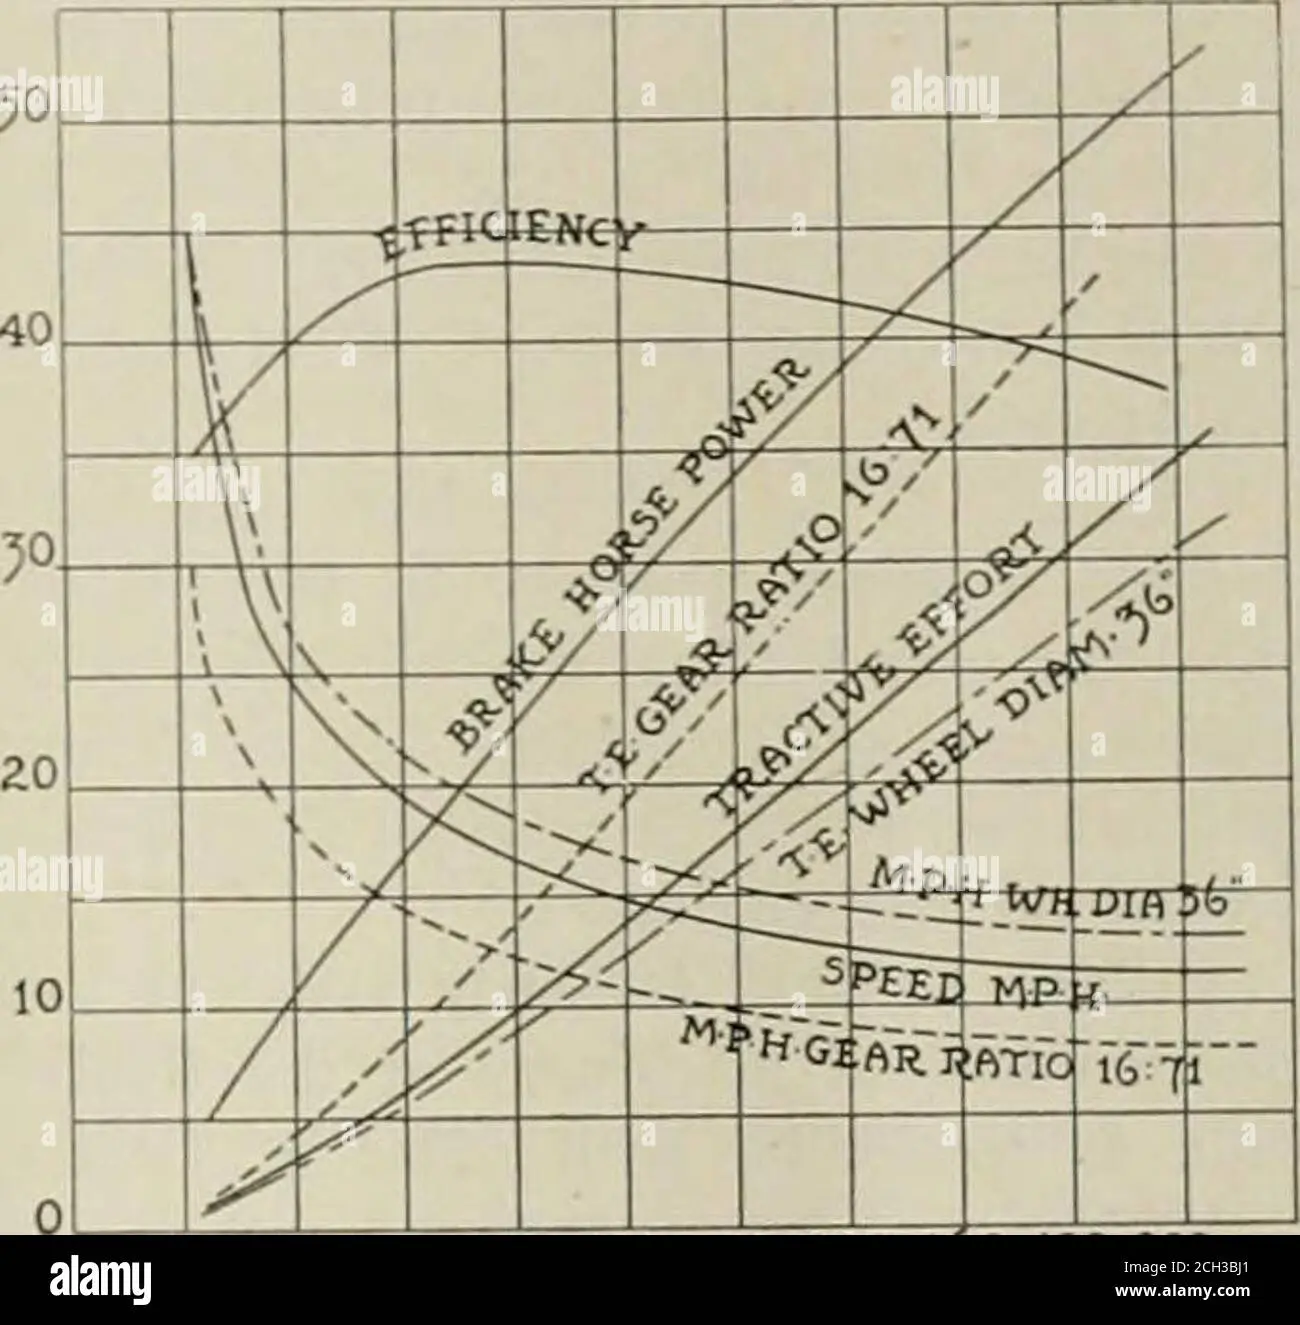 diagrama de fuerzas ferrocarriles en curva - Qué es la insuficiencia de peralte